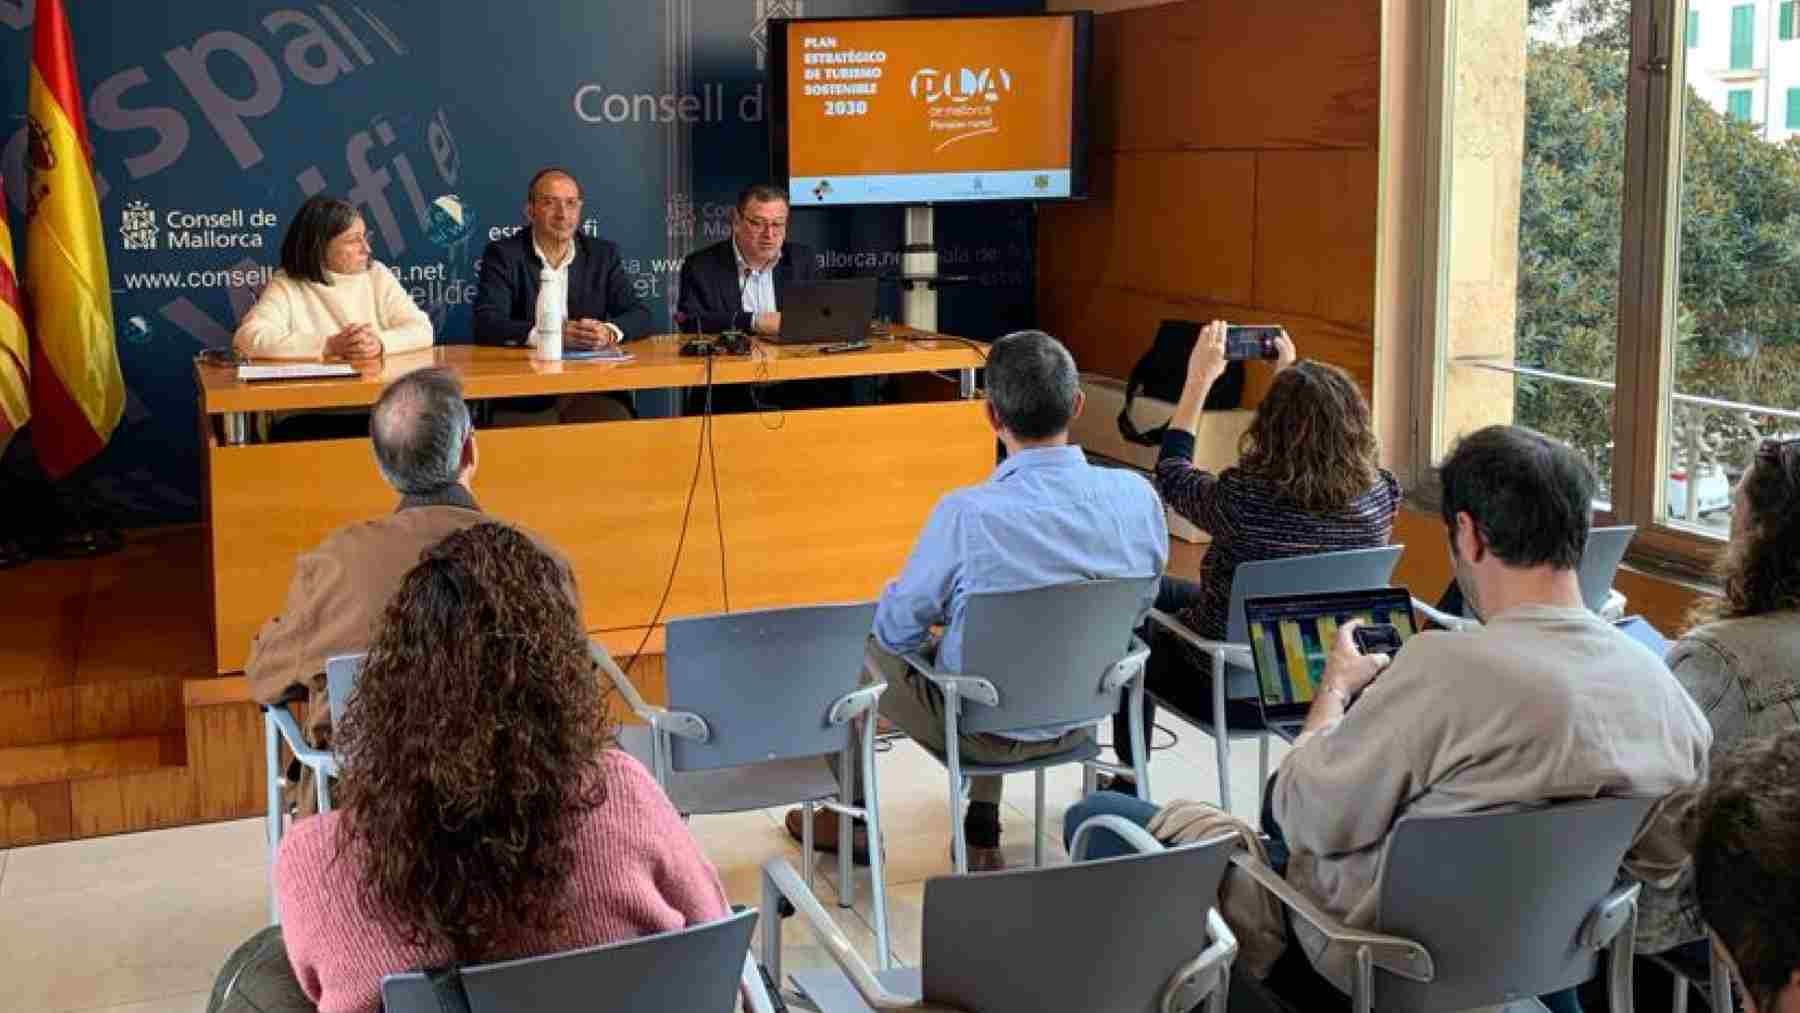 Presentación del Plan Estratégico de Turismo Sostenible del Pla de Mallorca en La Misericordia.